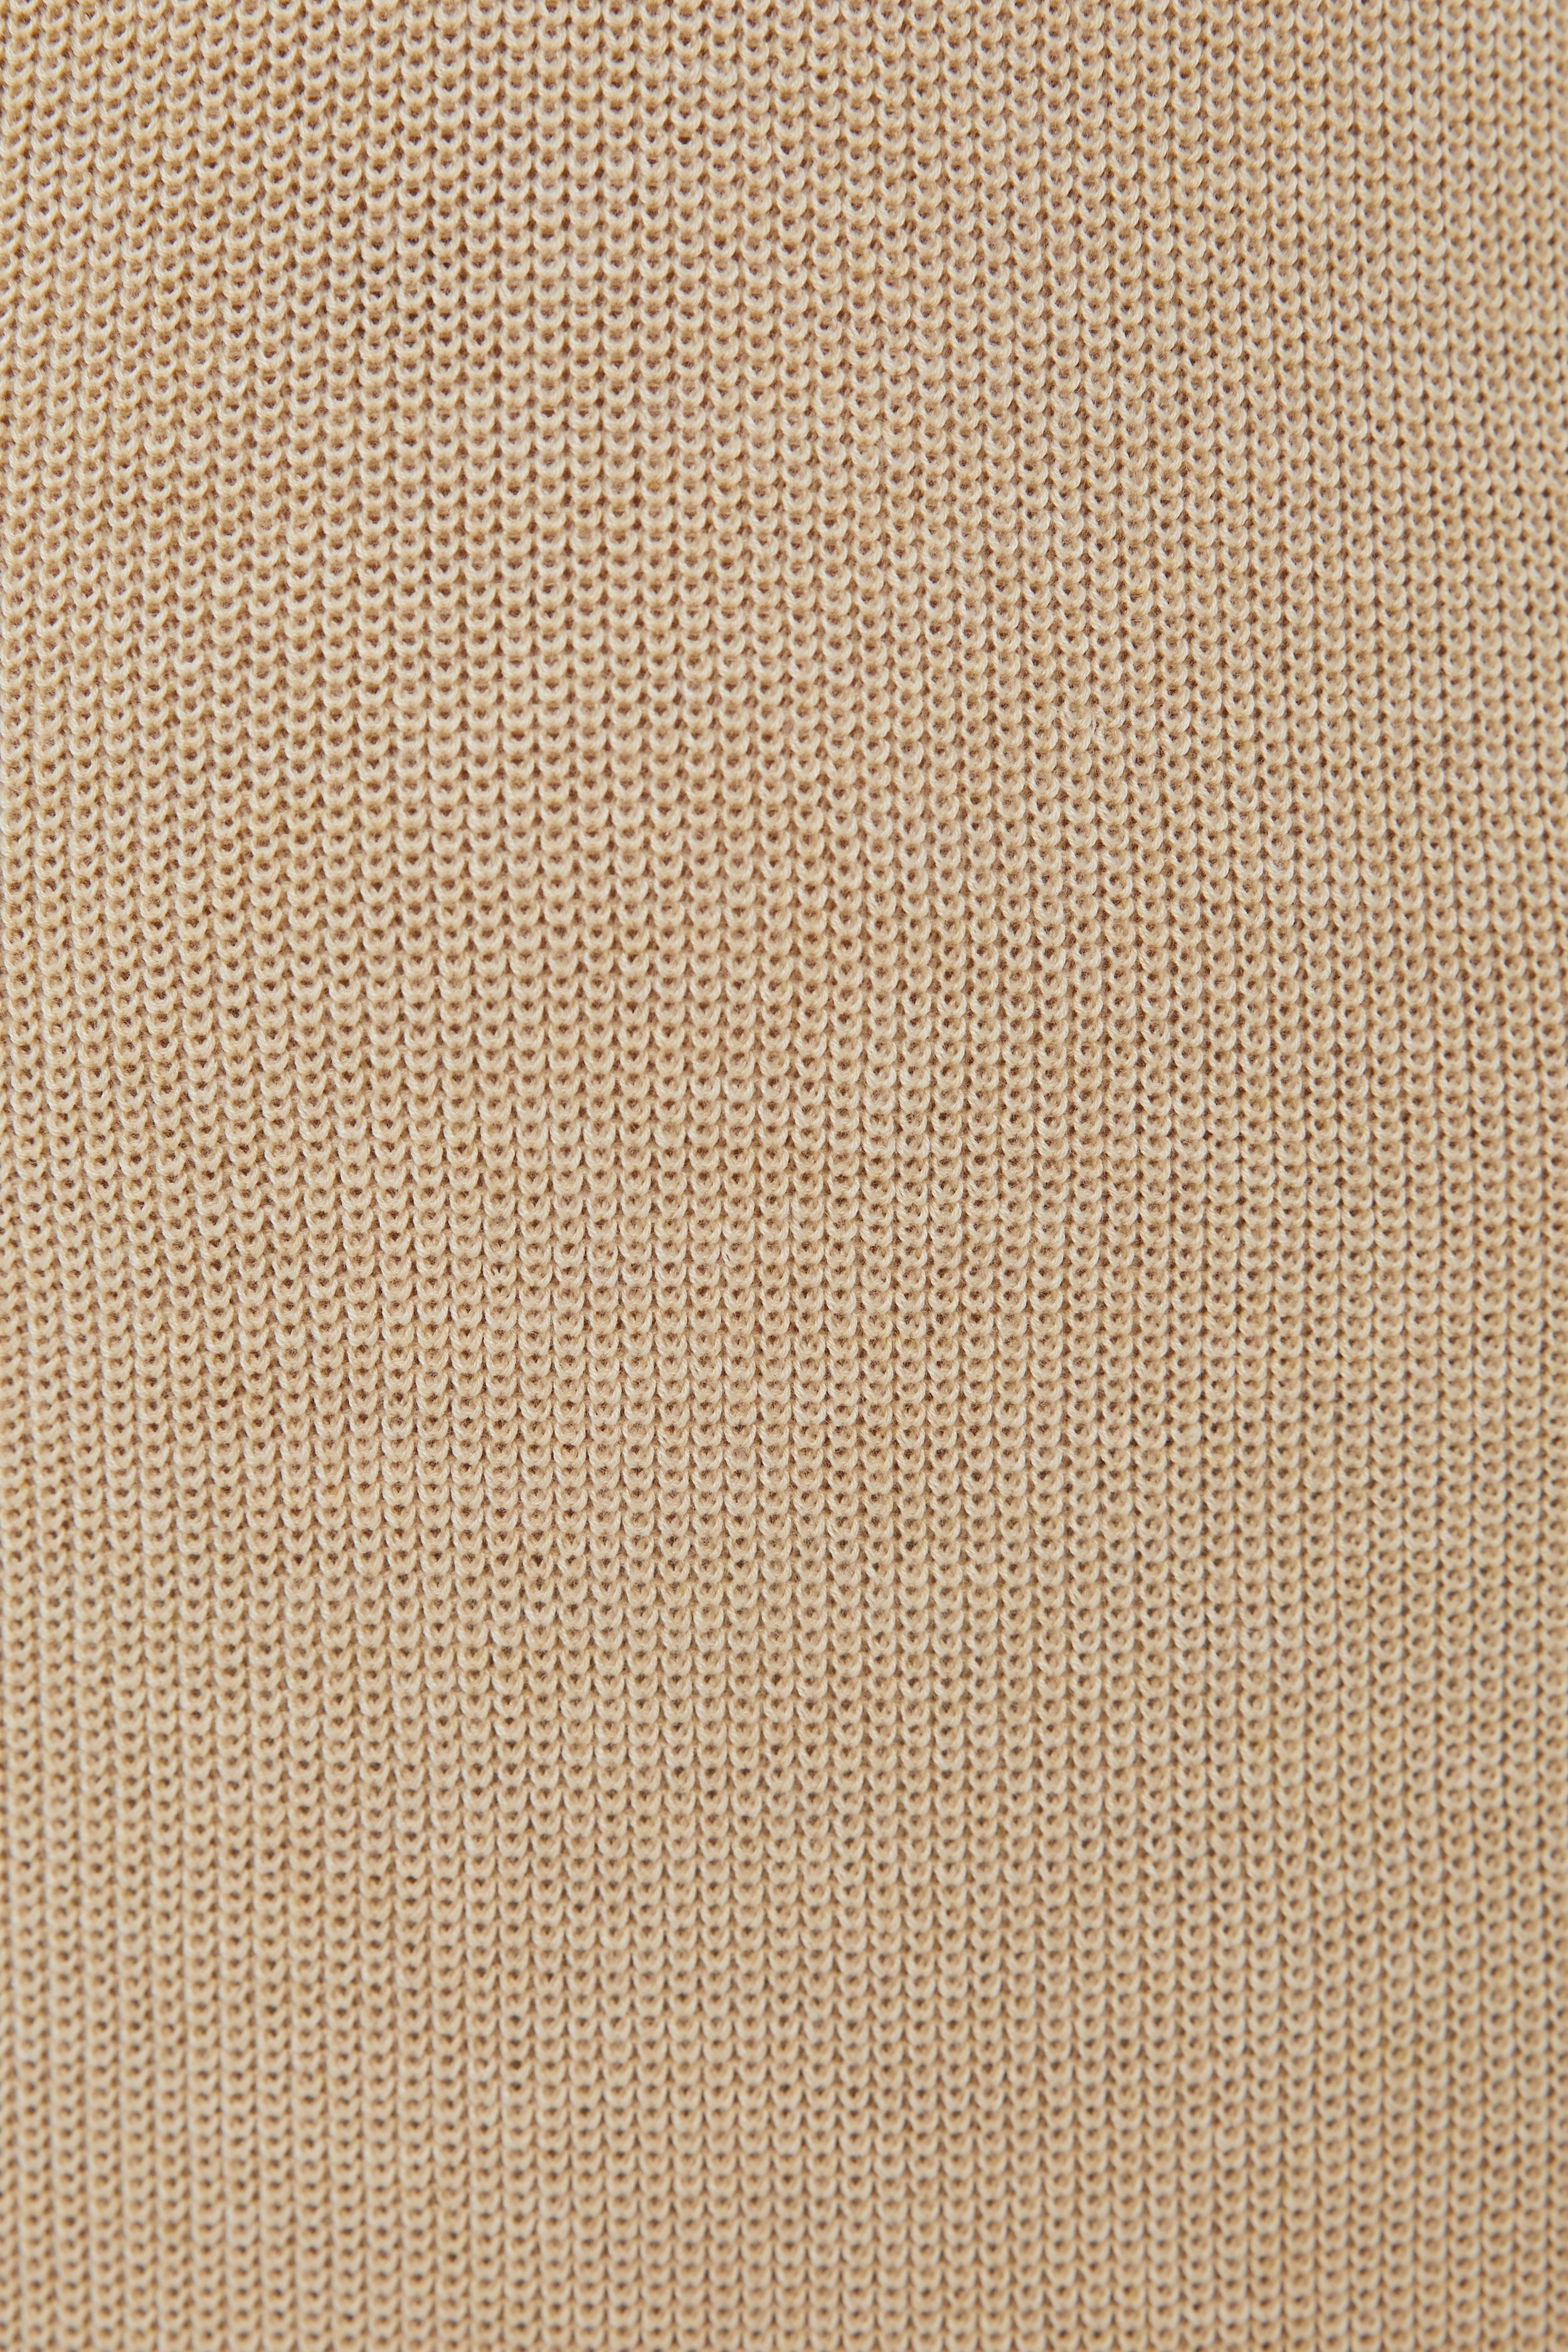 Knit V-Neck Dress in Wheat